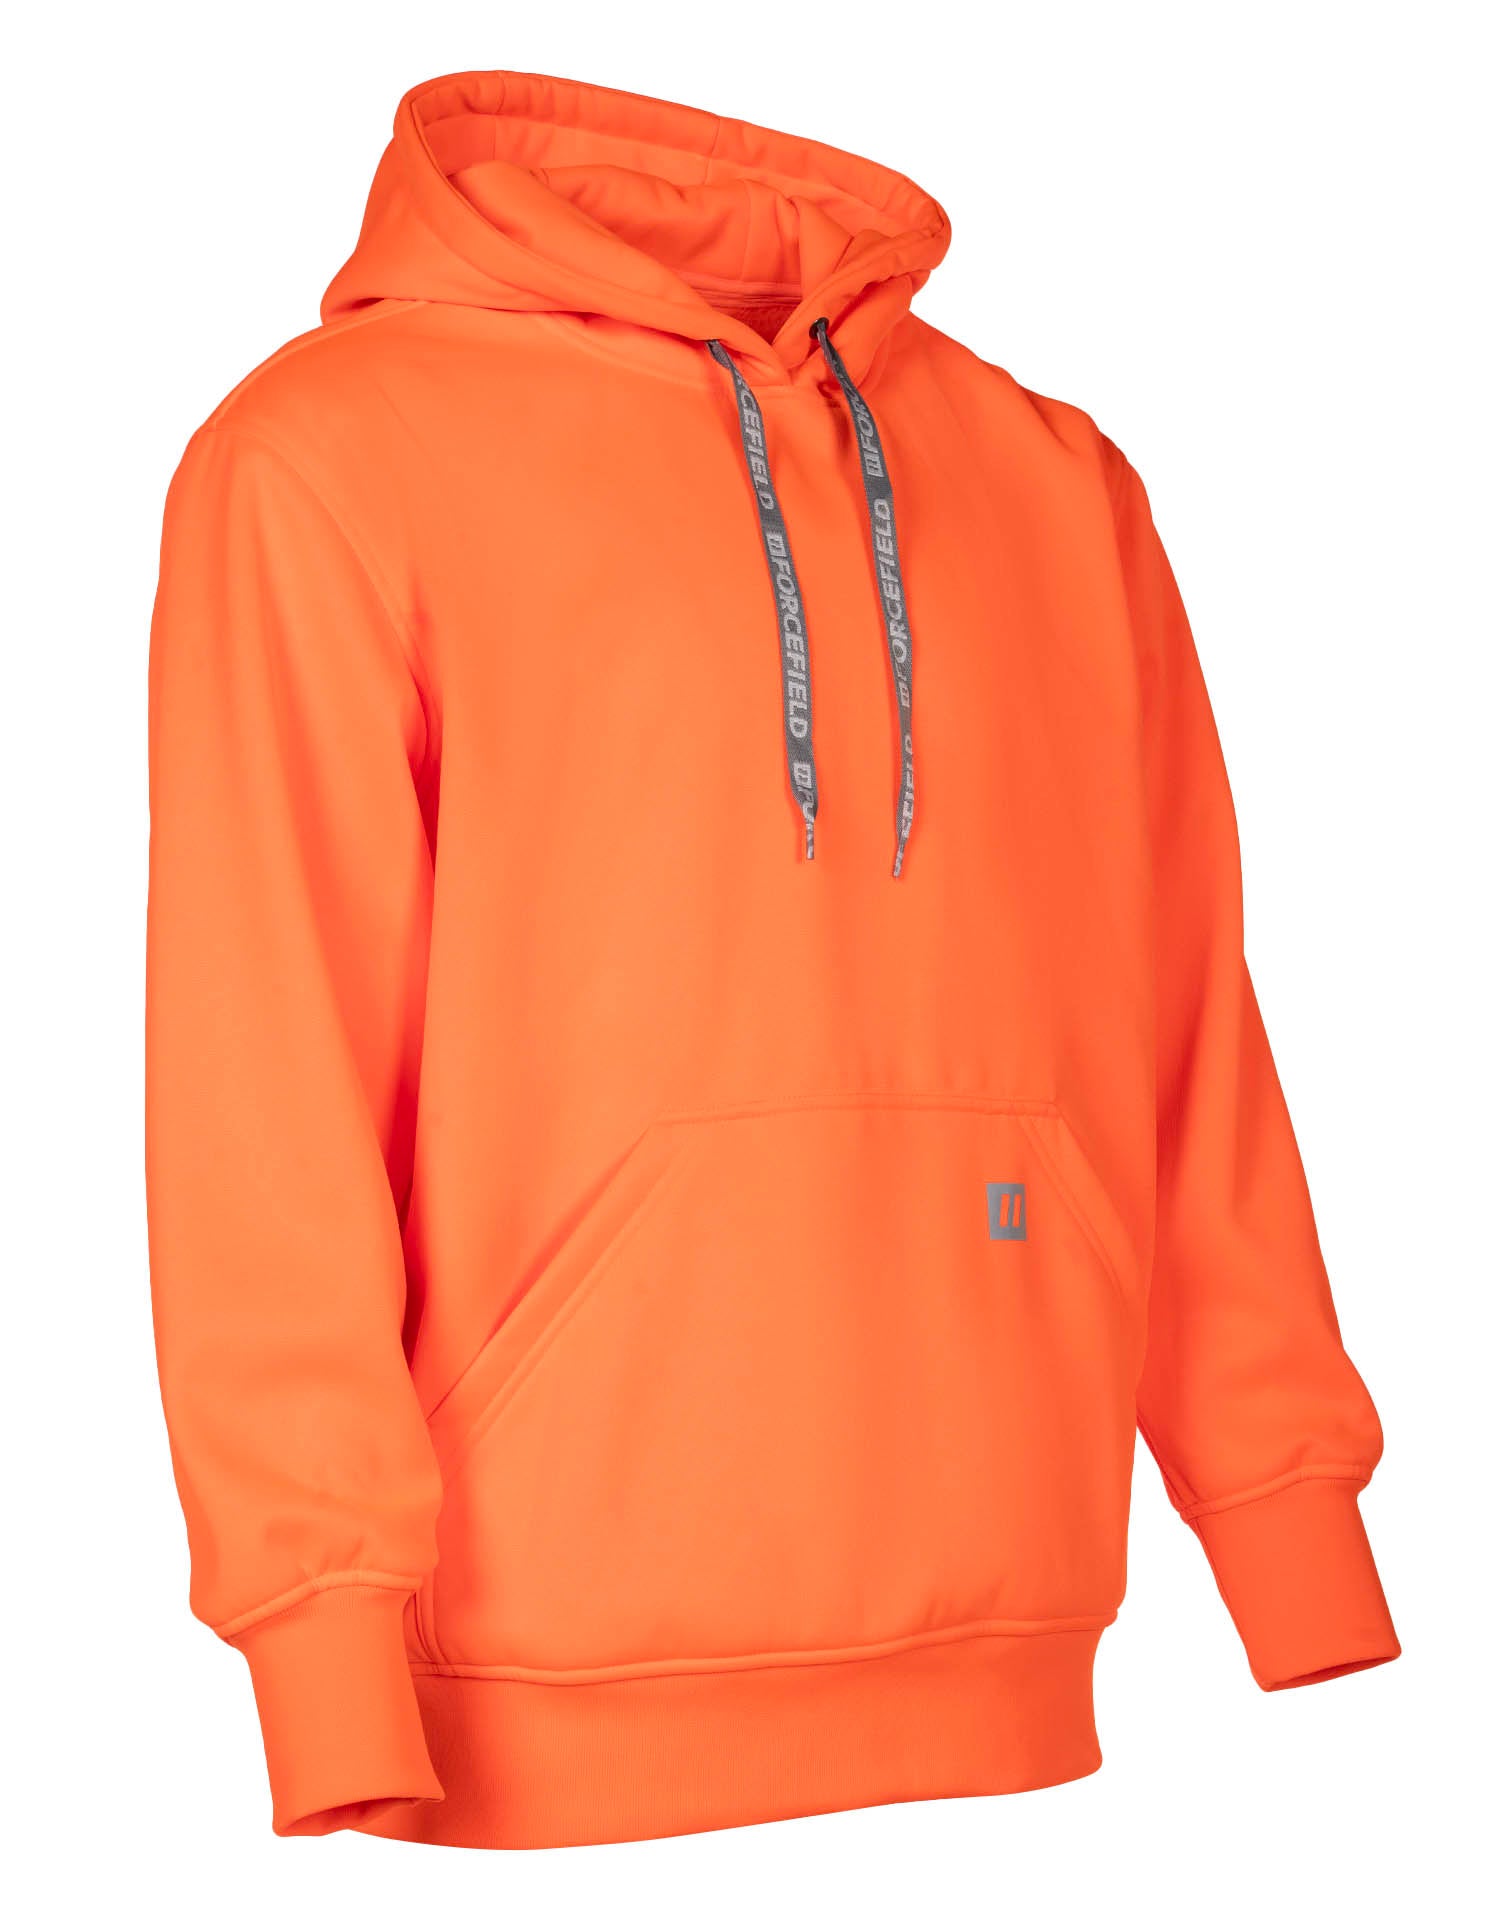 Sweat à capuche orange haute visibilité avec logo Forcefield sur les manches